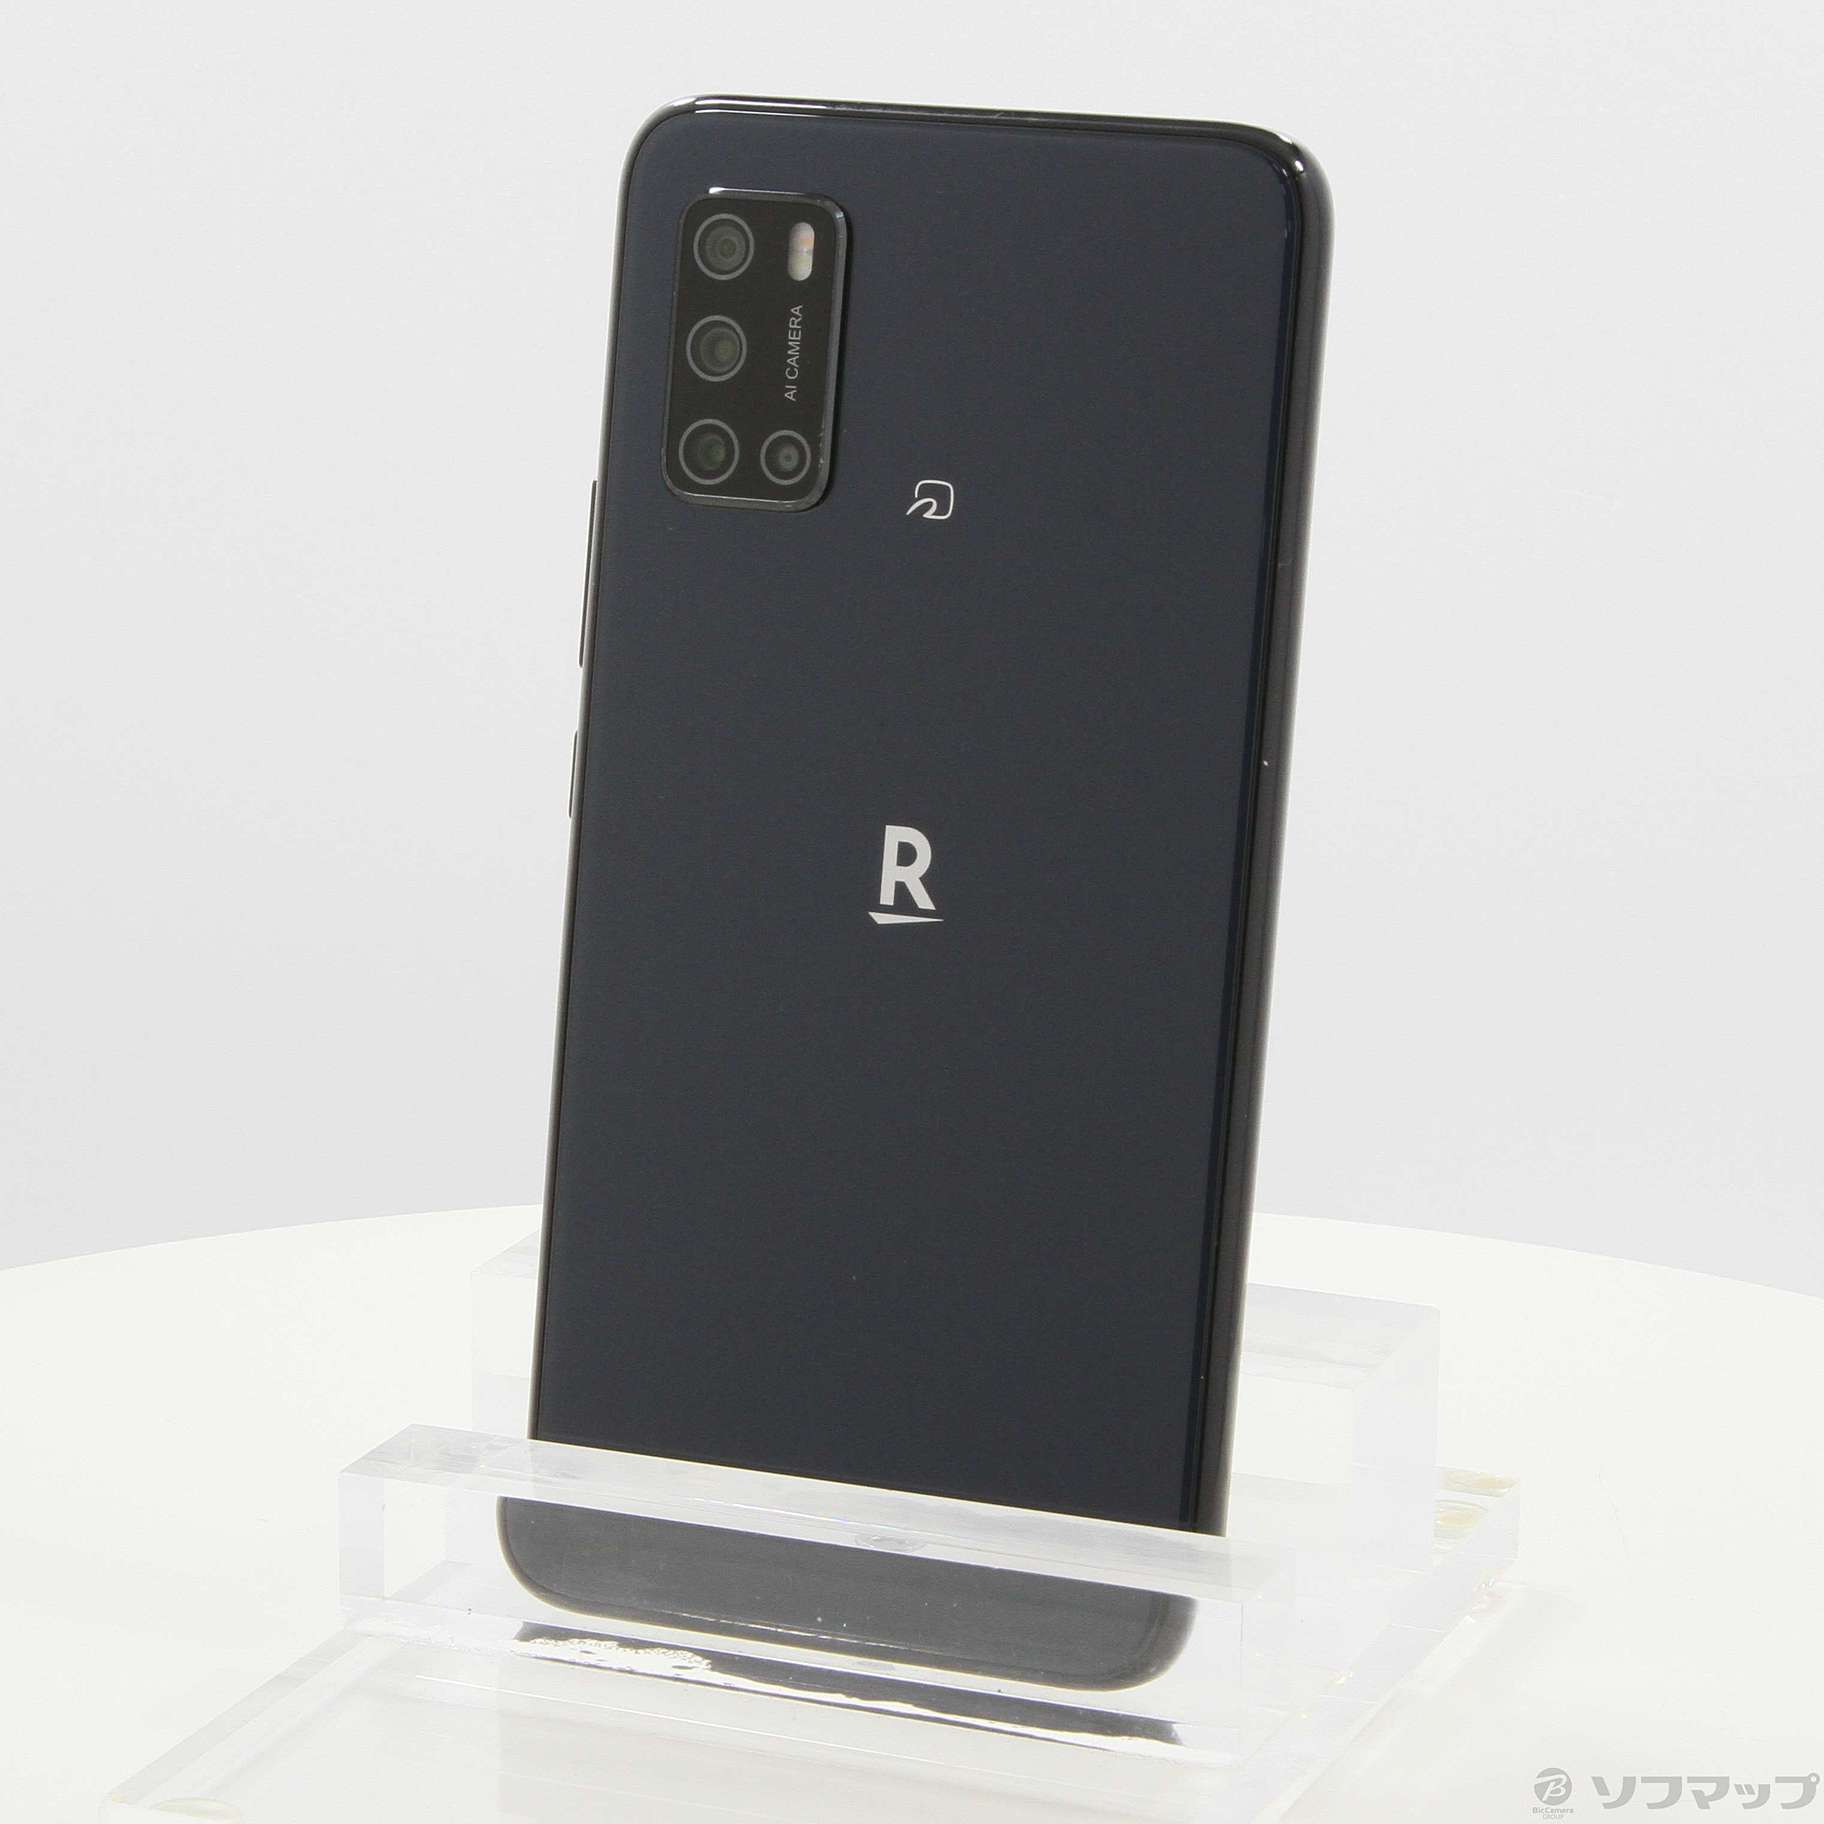 Rakuten BIG S ブラック SIMフリー - スマートフォン本体